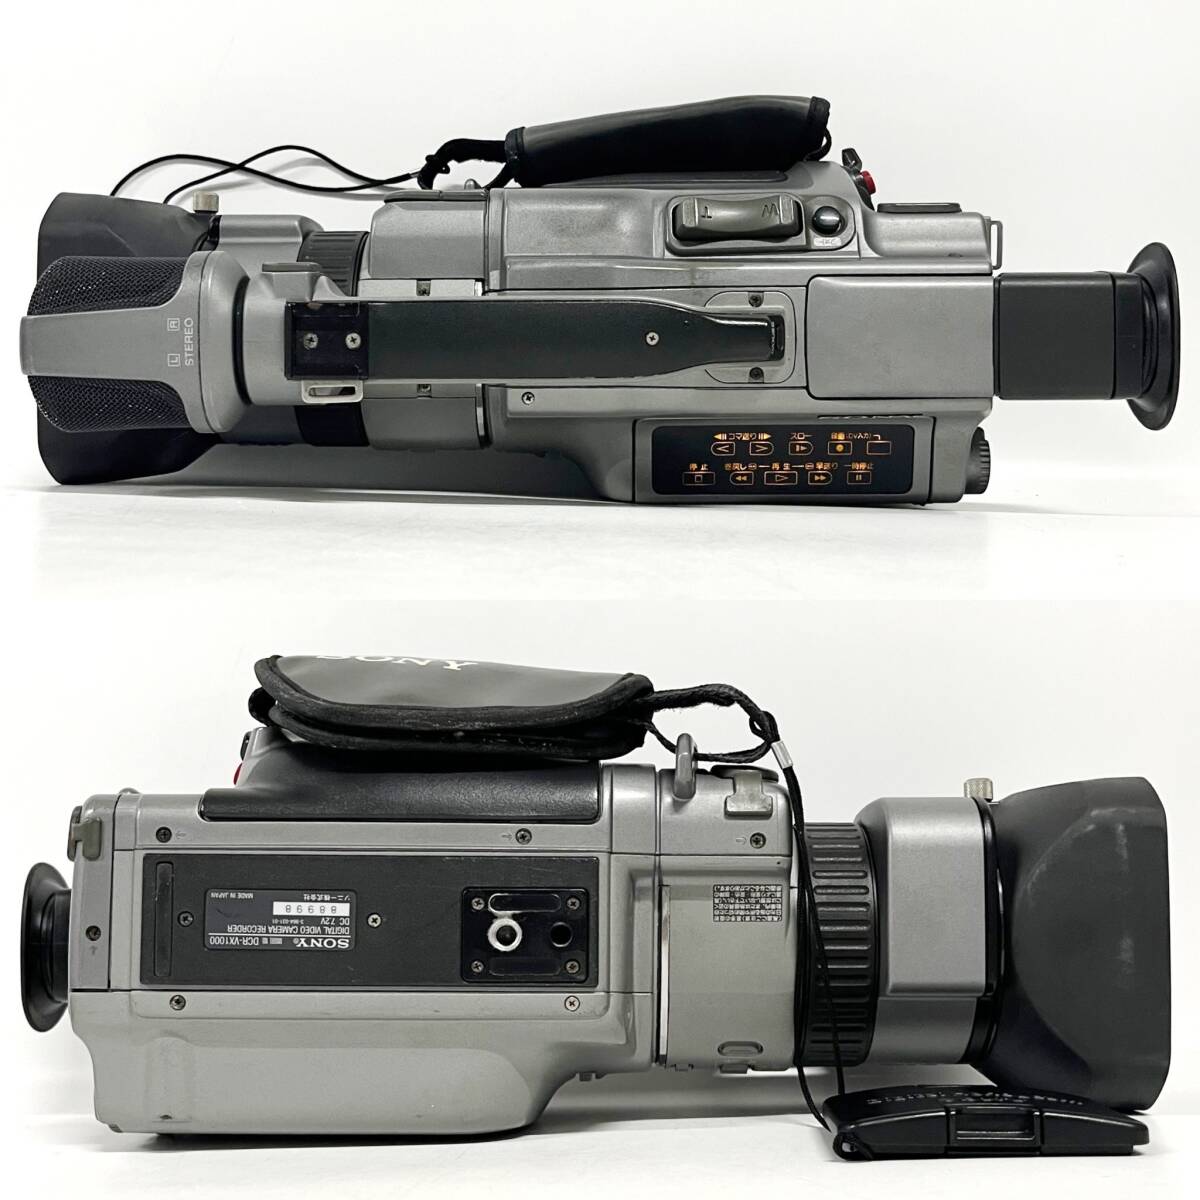 1 иен ~[ электризация проверка settled ] Sony SONY DCR-VX1000 VIDEO LENS OPTICAL 10×ZOOM/AF f=5.9-59 1:1.6 цифровая видео камера магнитофон J120018